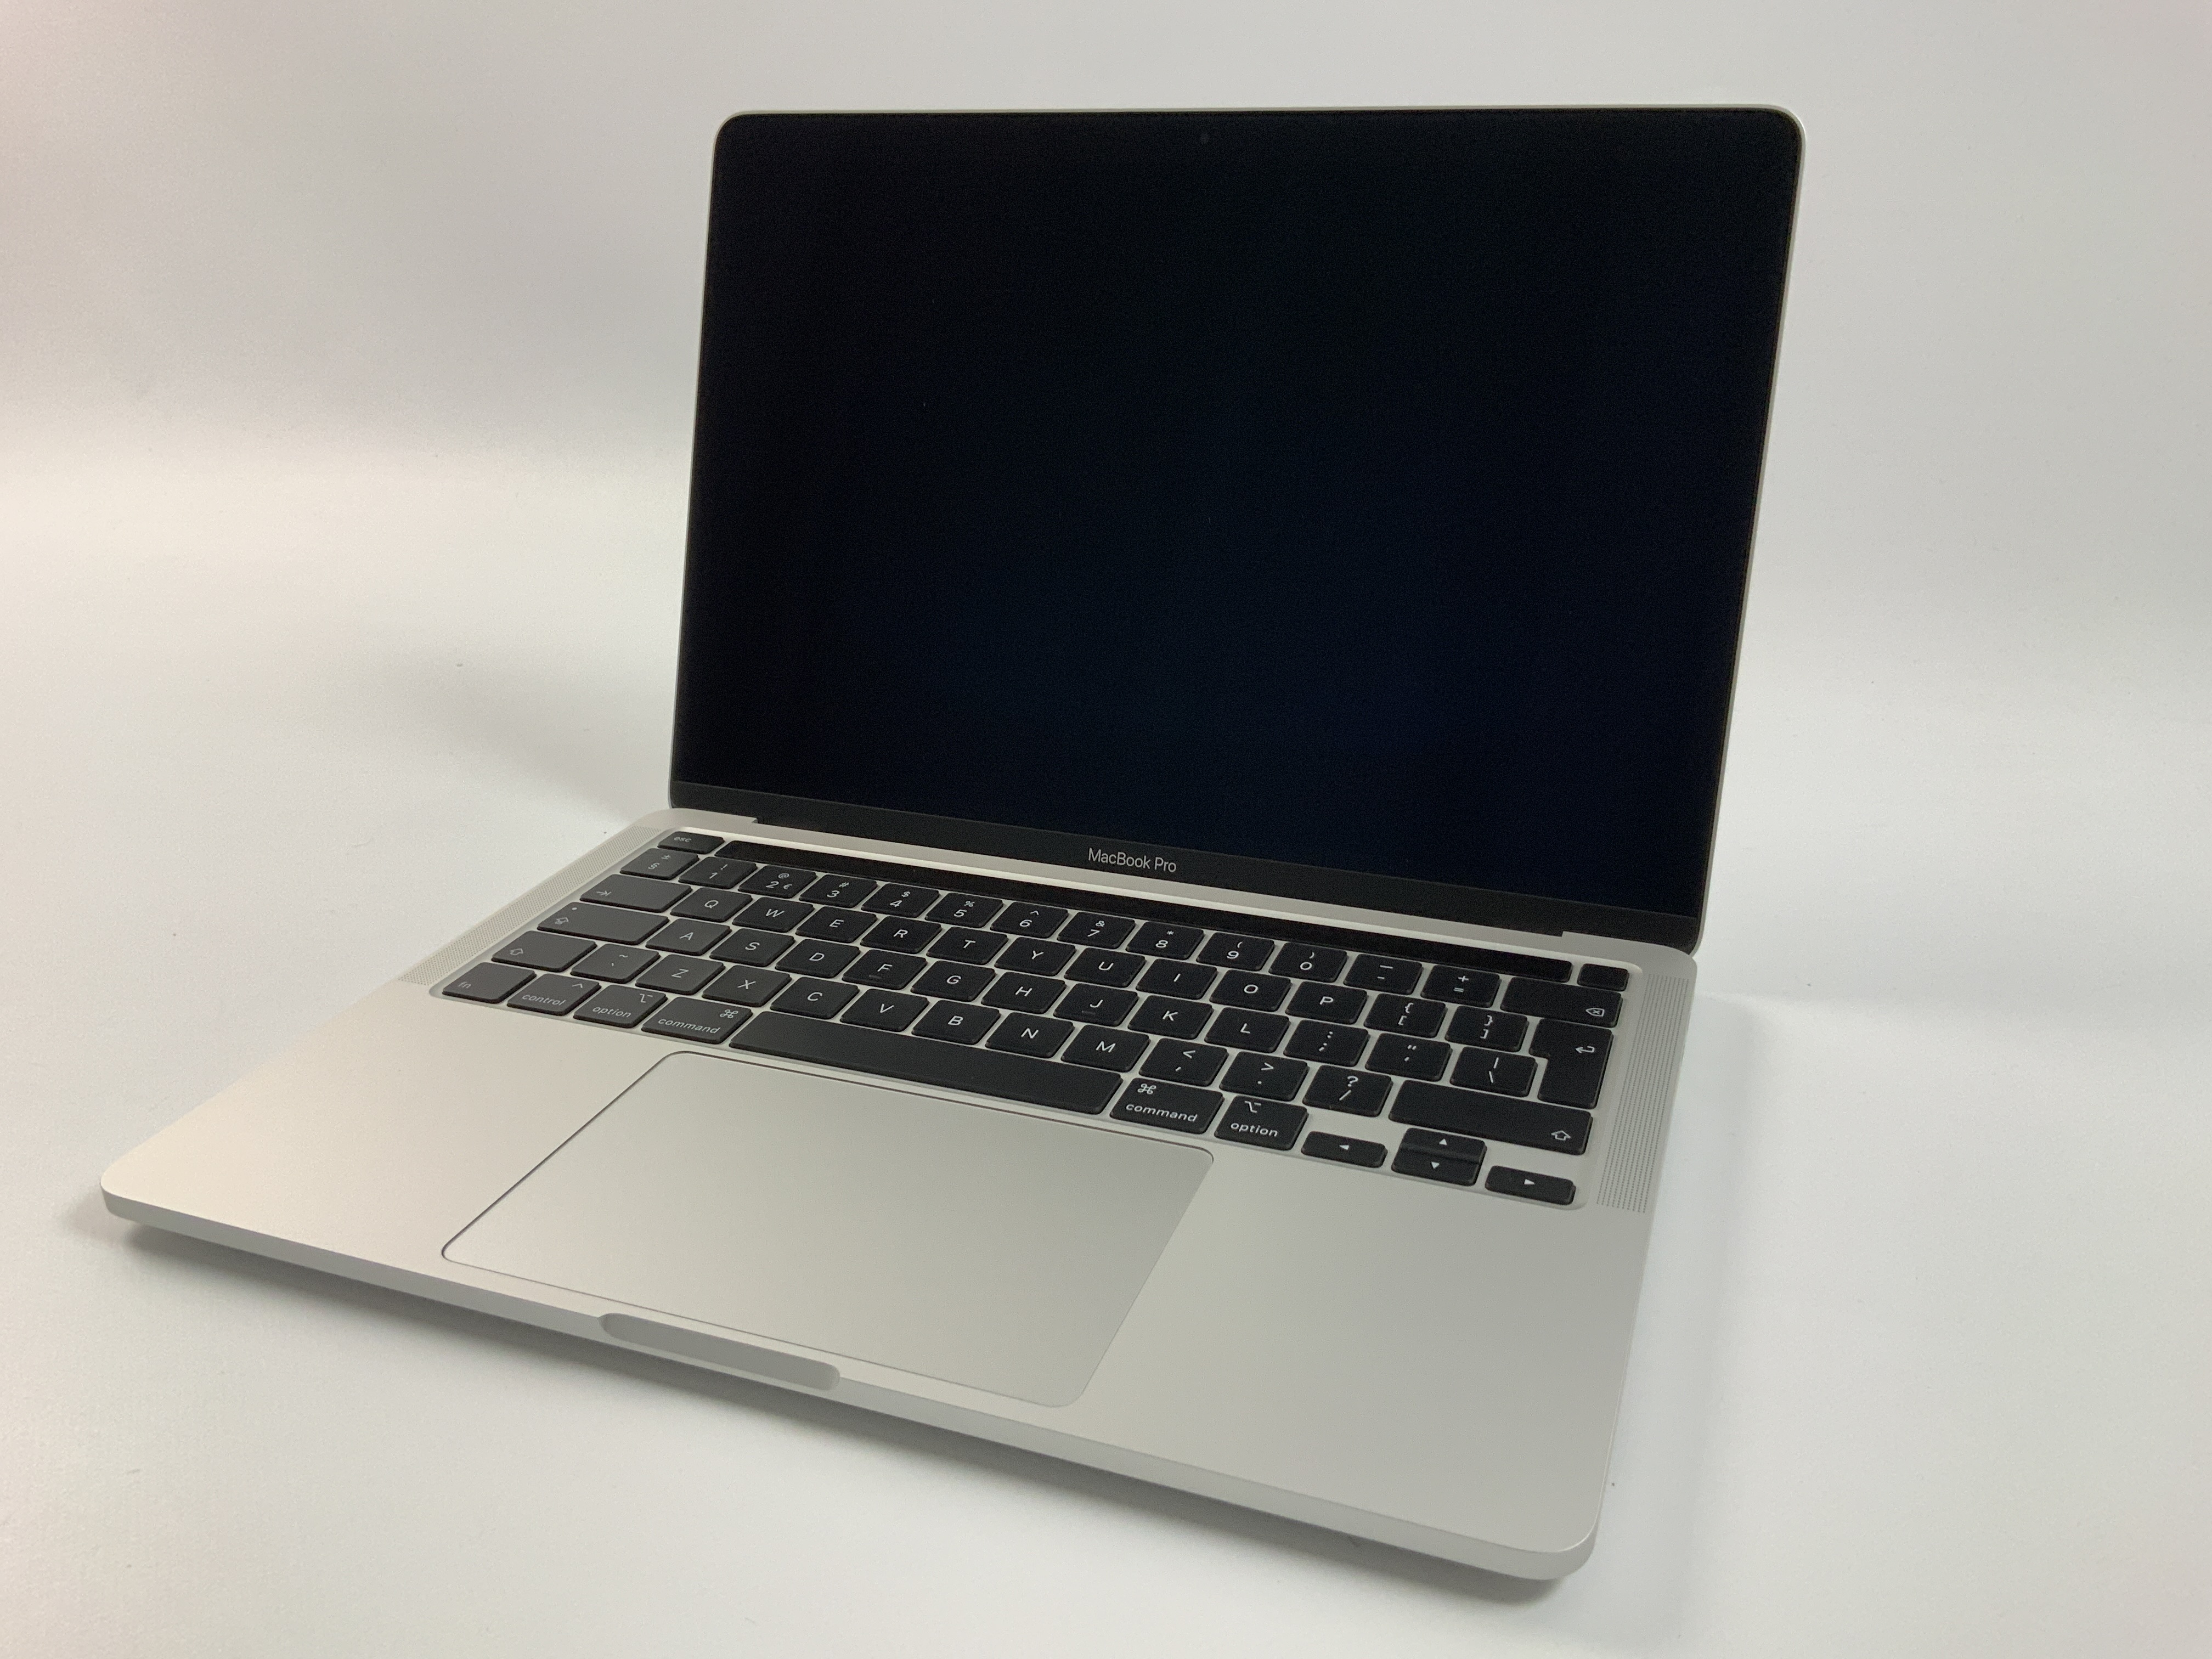 MacBook Pro 13" 4TBT Mid 2020 (Intel Quad-Core i5 2.0 GHz 16 GB RAM 1 TB SSD), Silver, Intel Quad-Core i5 2.0 GHz, 16 GB RAM, 1 TB SSD, bild 1